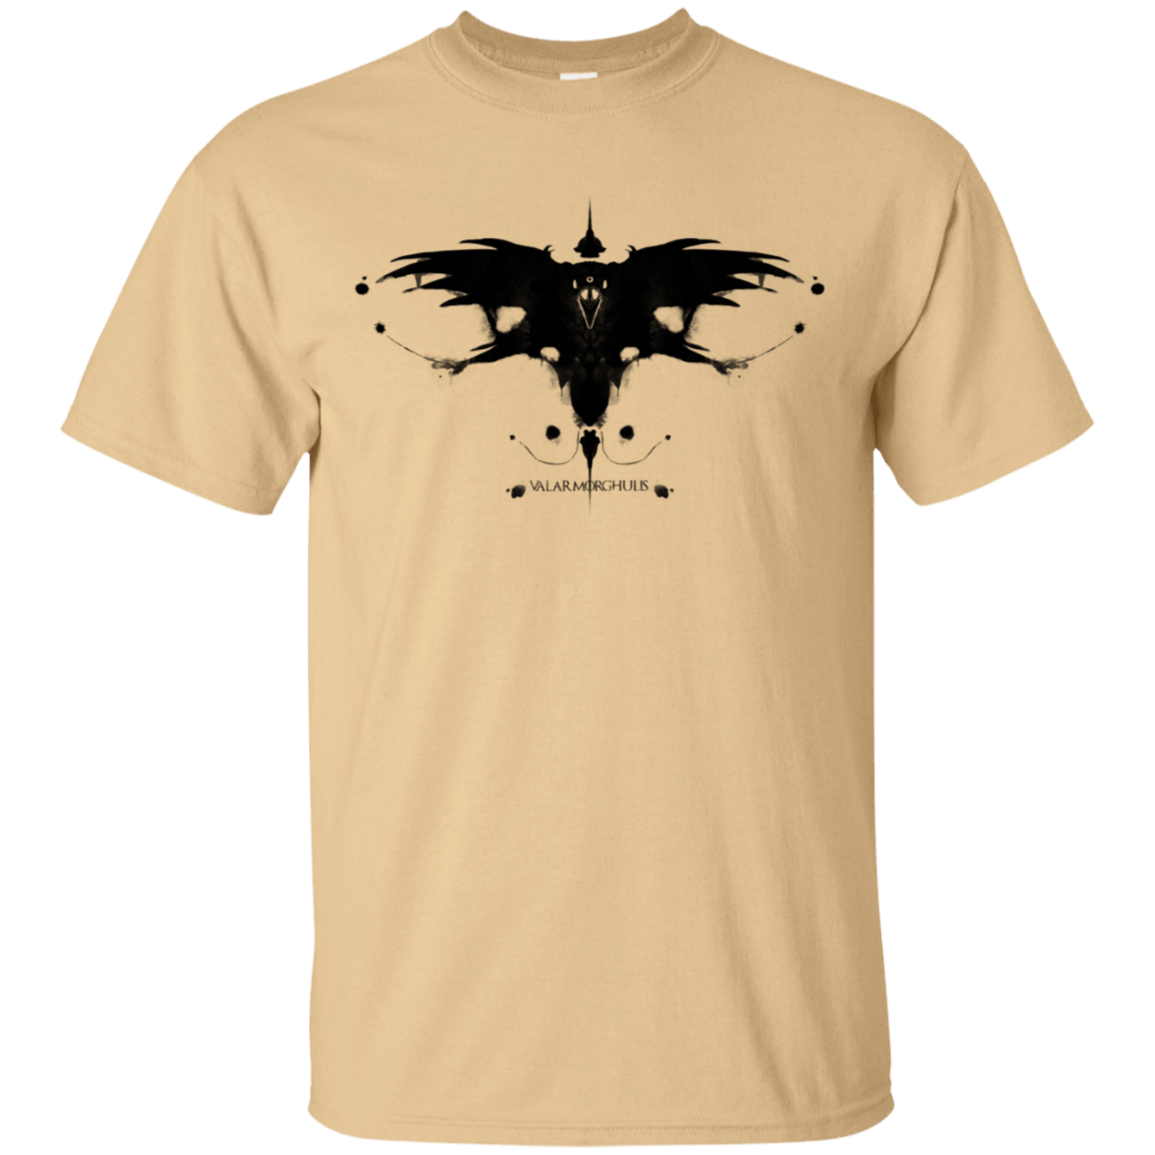 T-Shirts Vegas Gold / S Valar Morghulis T-Shirt